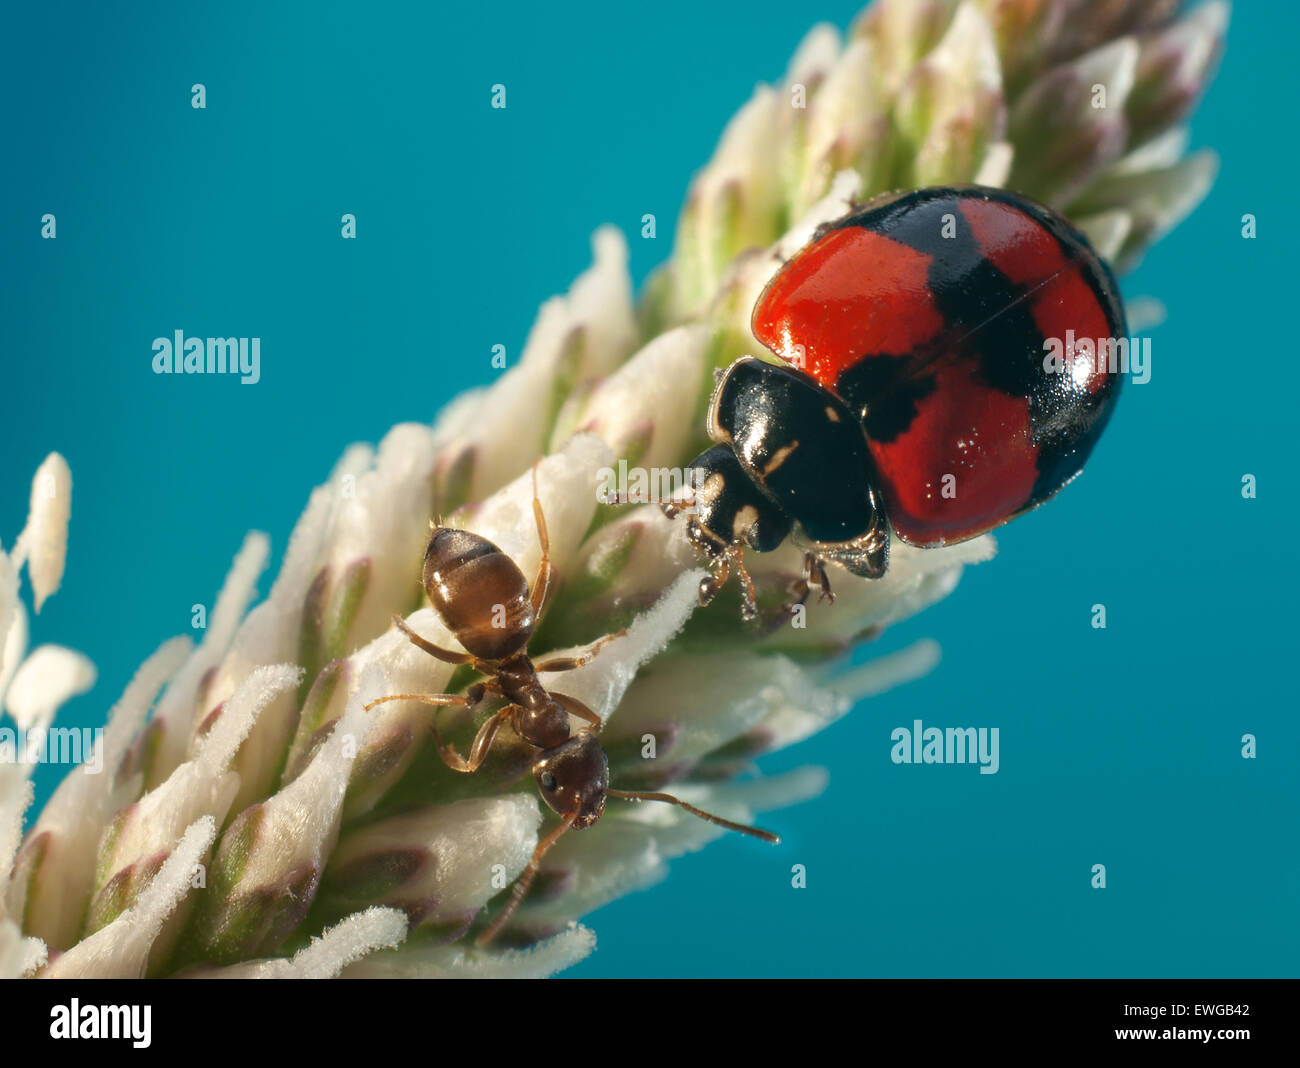 Ladybug datoteka (Adalia bipunctata),(Coccinellidae) met with ant (Lasius fuliginosus). Stock Photo